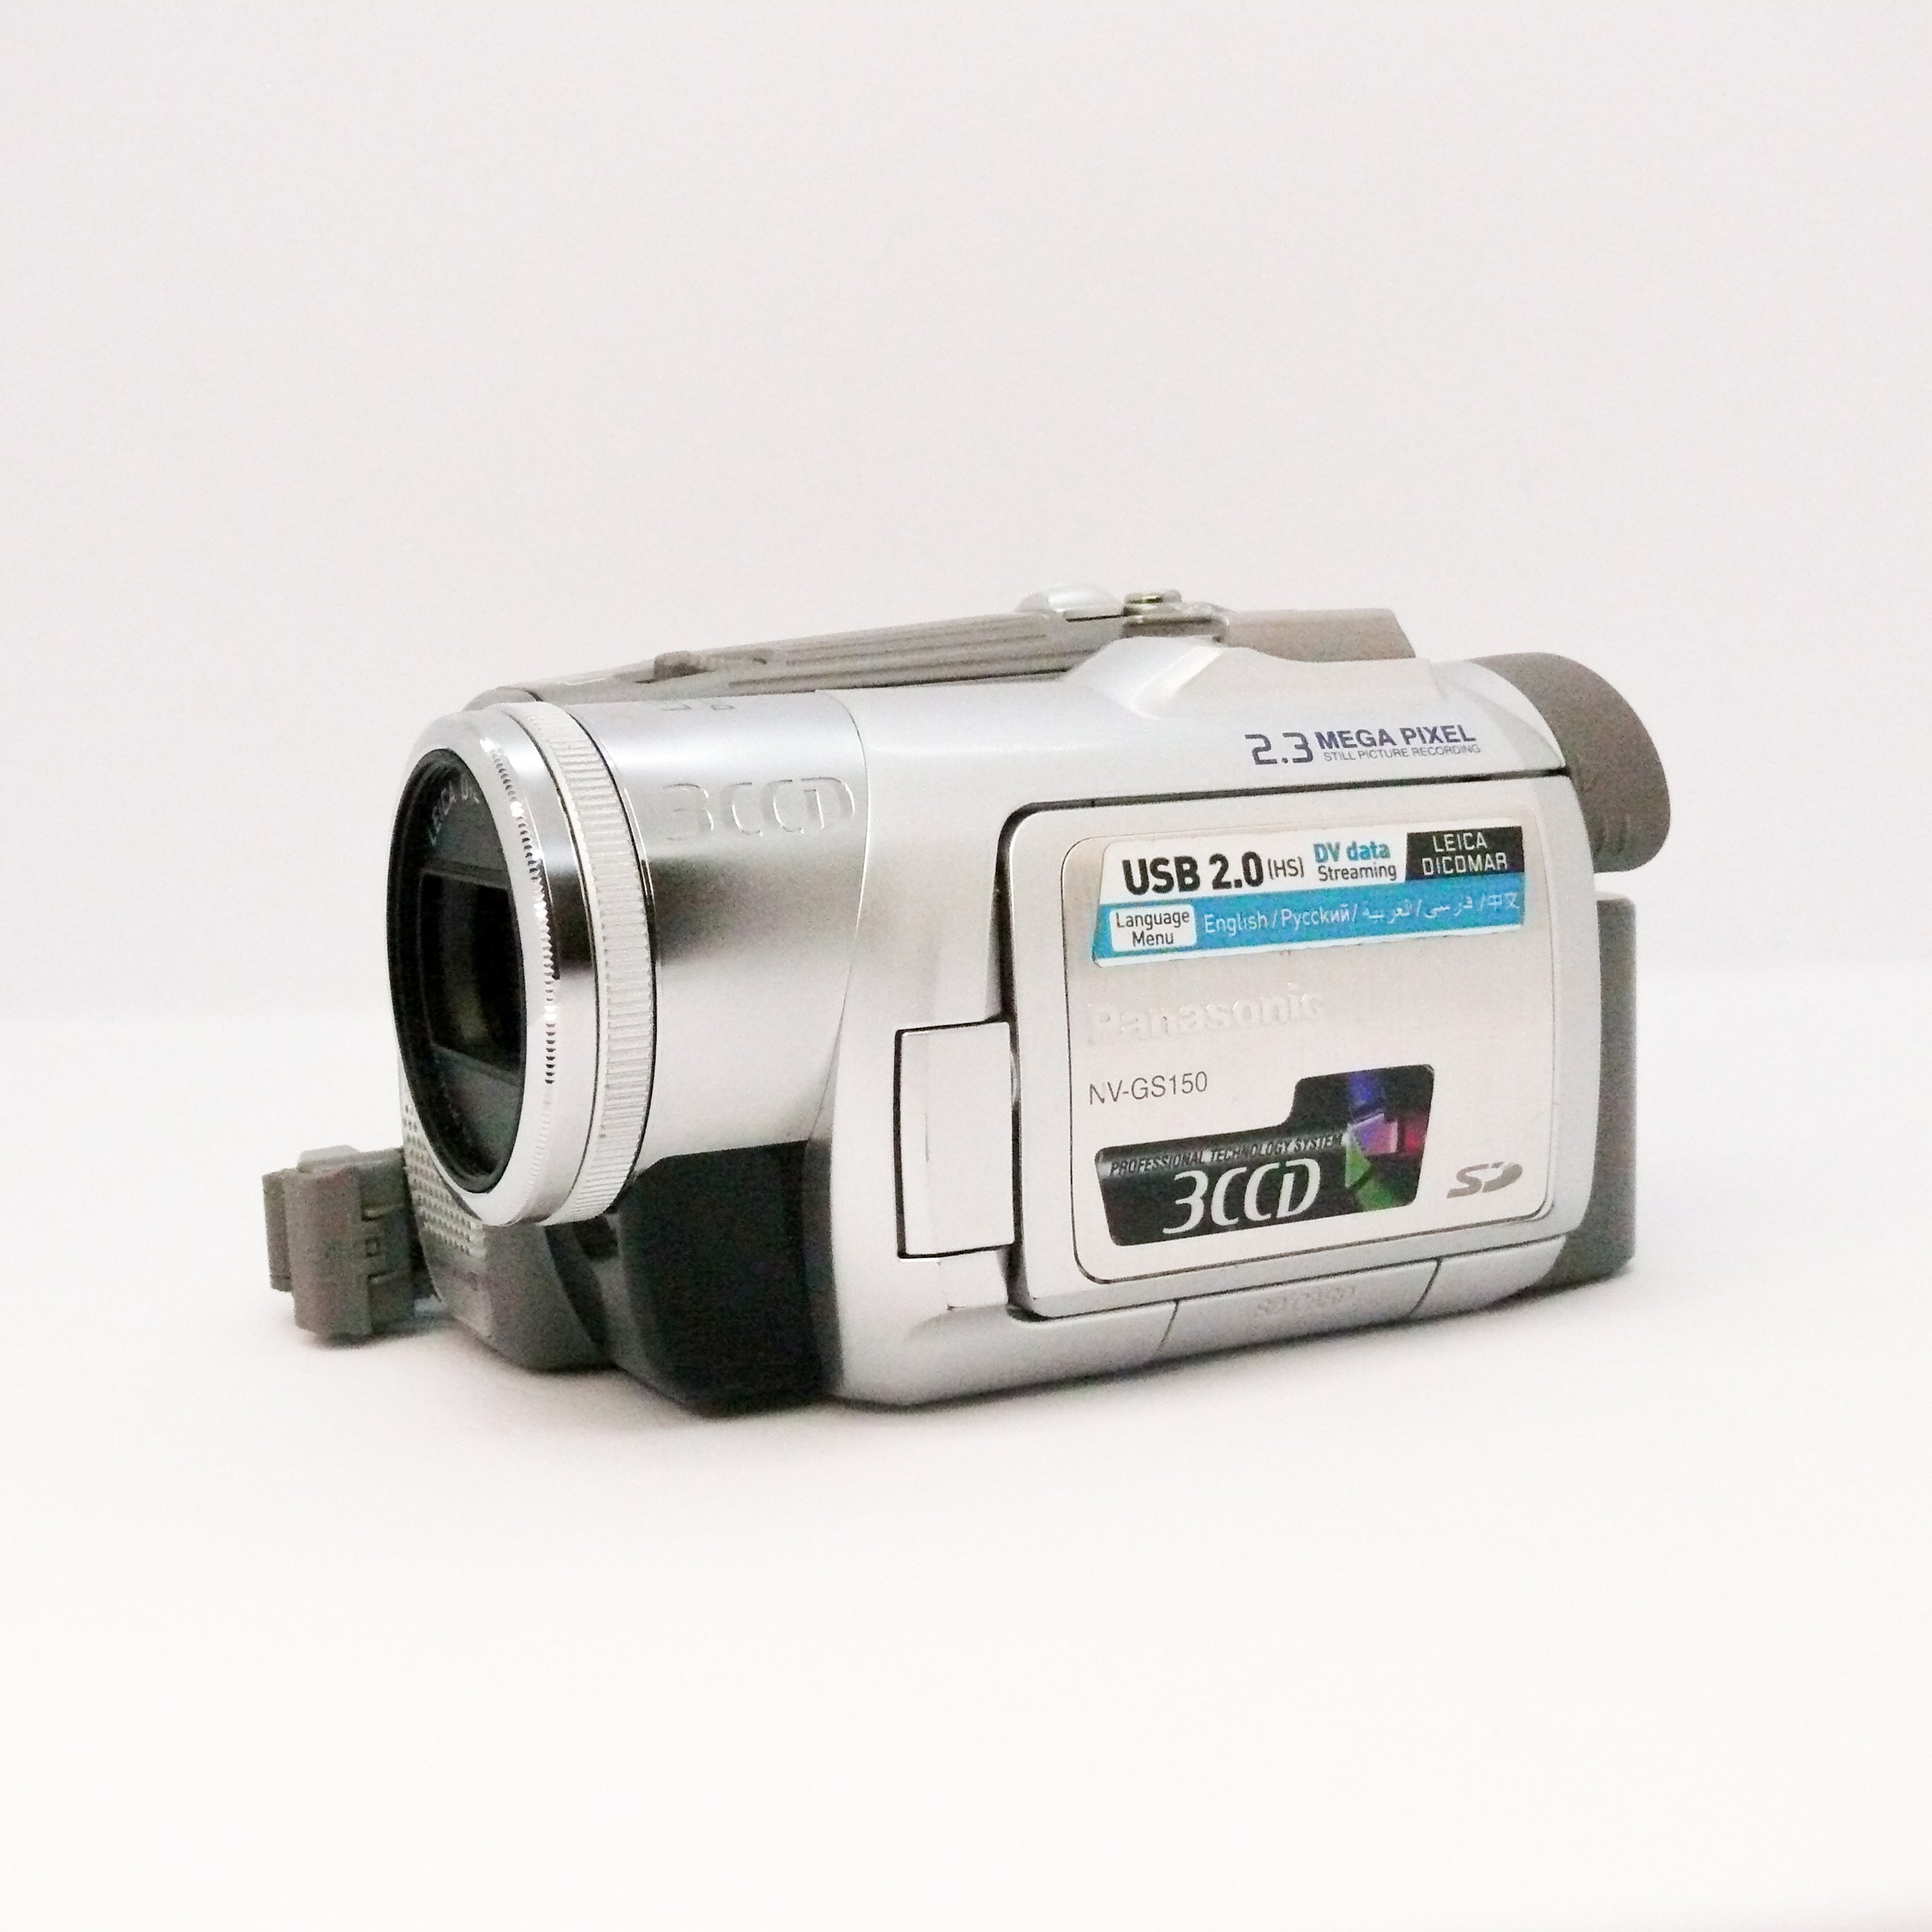 ほぼ新品【再生・録音OK】Panasonic MiniDVビデオカメラ NV-GS150 ビデオカメラ